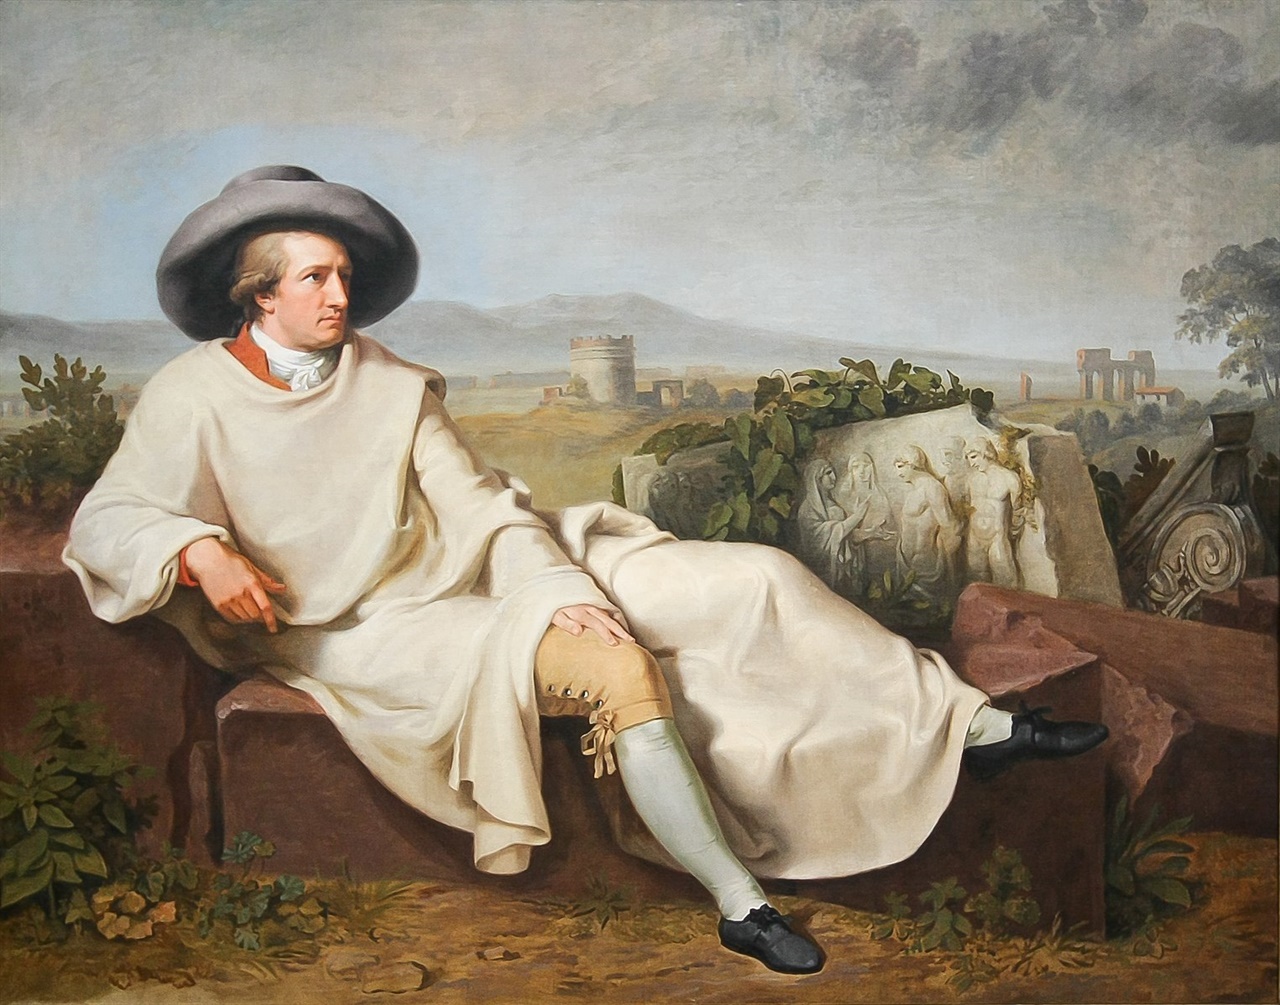 요한 하인리히 빌헬름 티슈바인, 1787년. 캔버스에 유화, 164x206cm, 슈타델 미술관